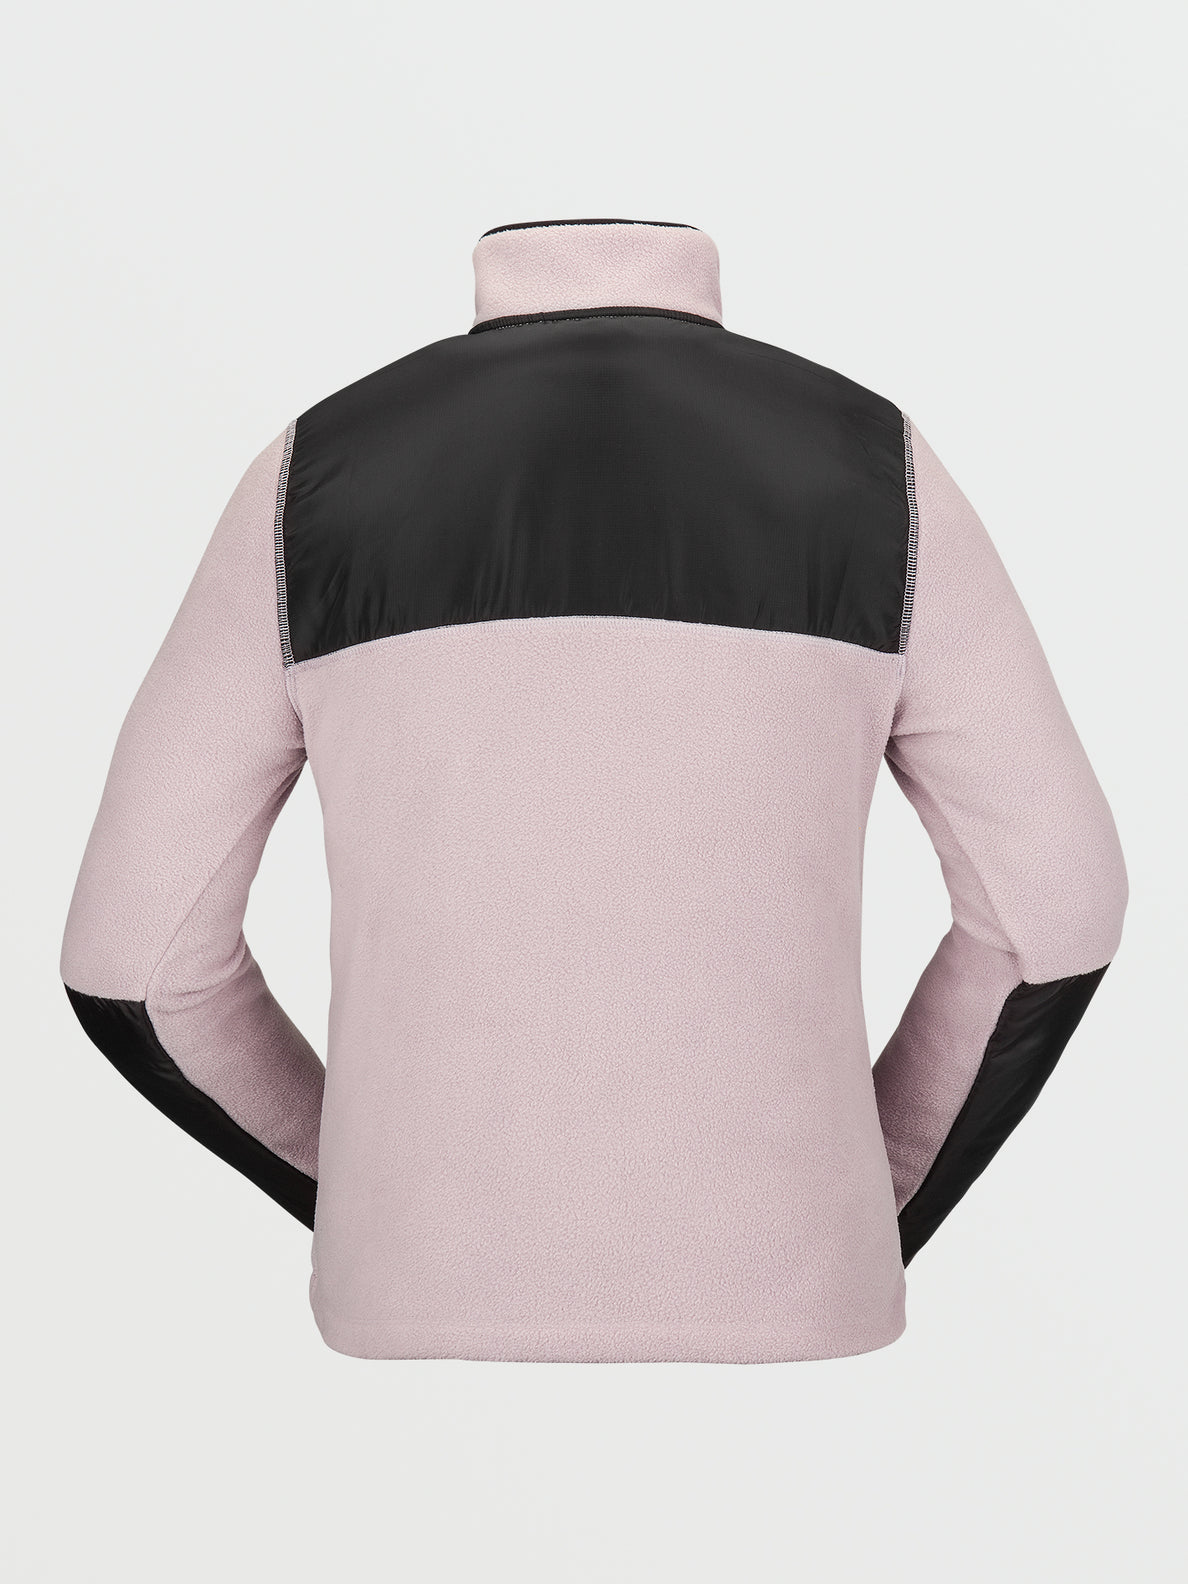 The North Face Long-Sleeve Denali Color Block Polartec® Fleece Jacket